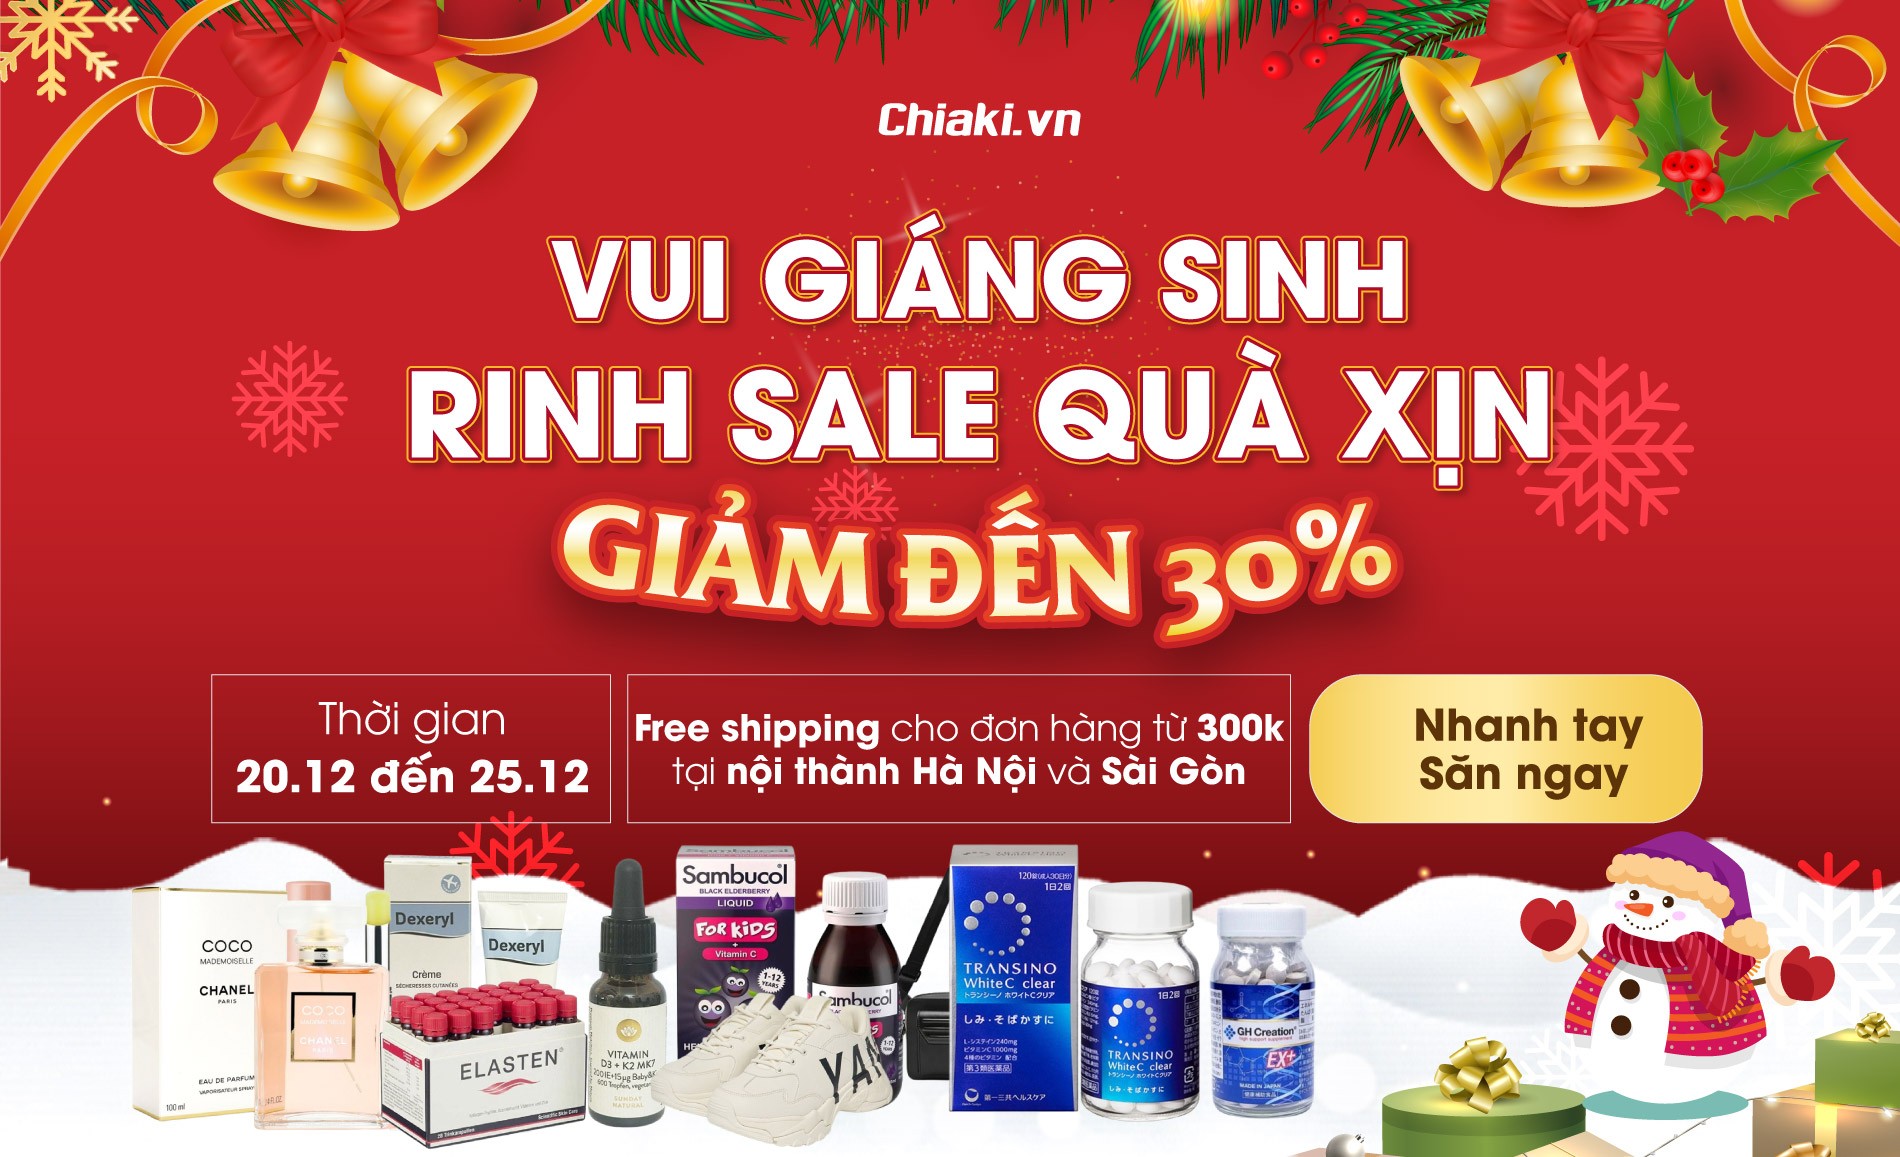 Vui Giáng Sinh - Rinh Sale Quà Xịn từ Chiaki giảm tới 30%